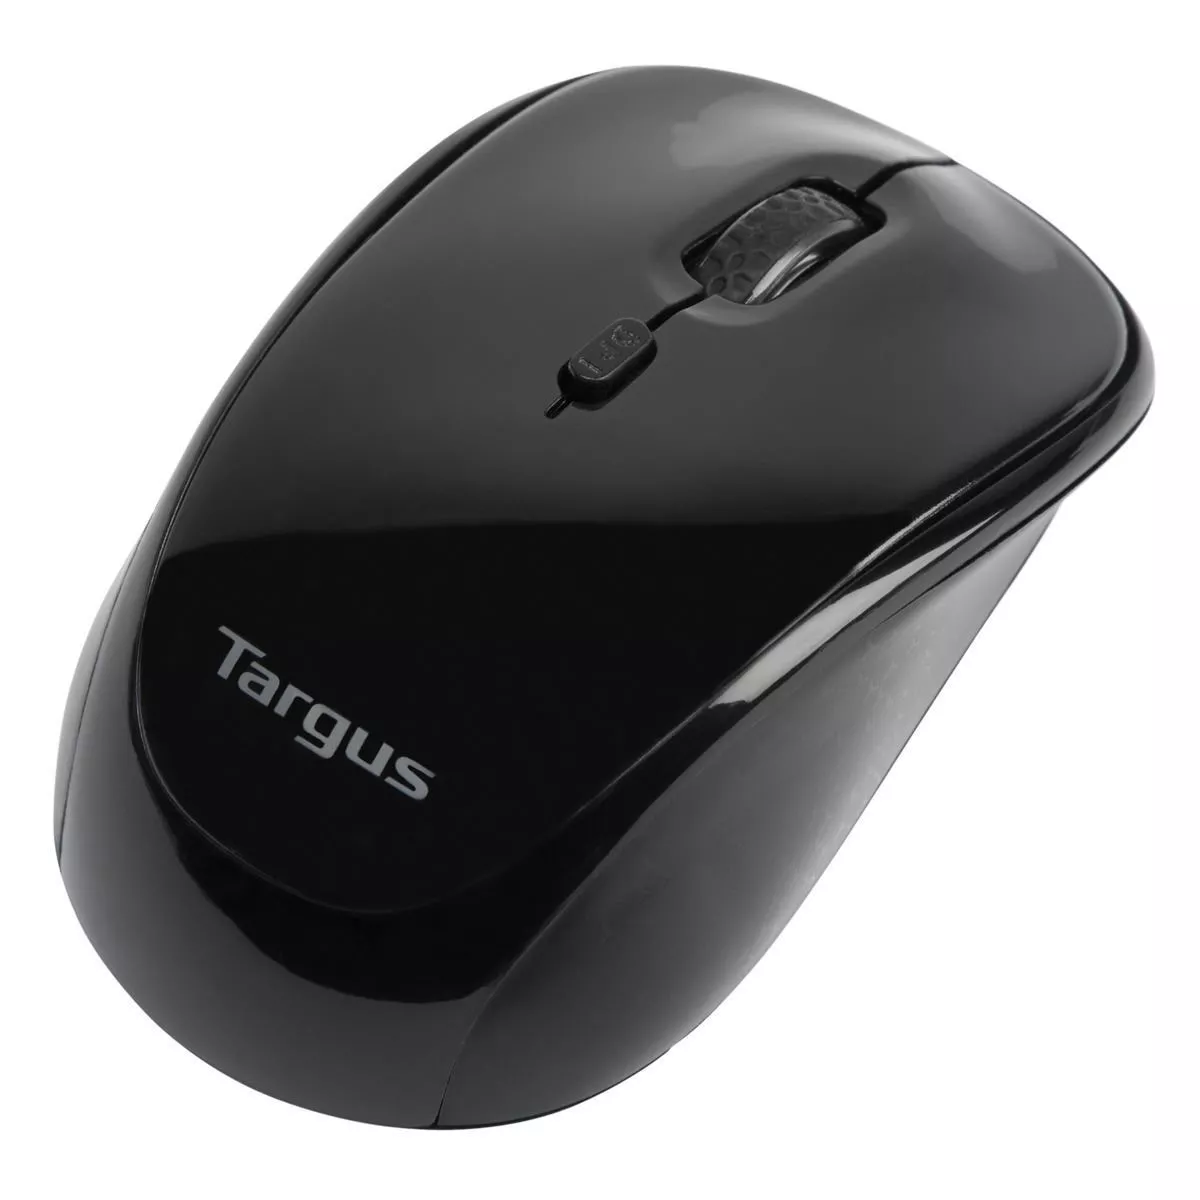 Vente TARGUS Souris Blue Trace sans fil USB Utilisation Targus au meilleur prix - visuel 6